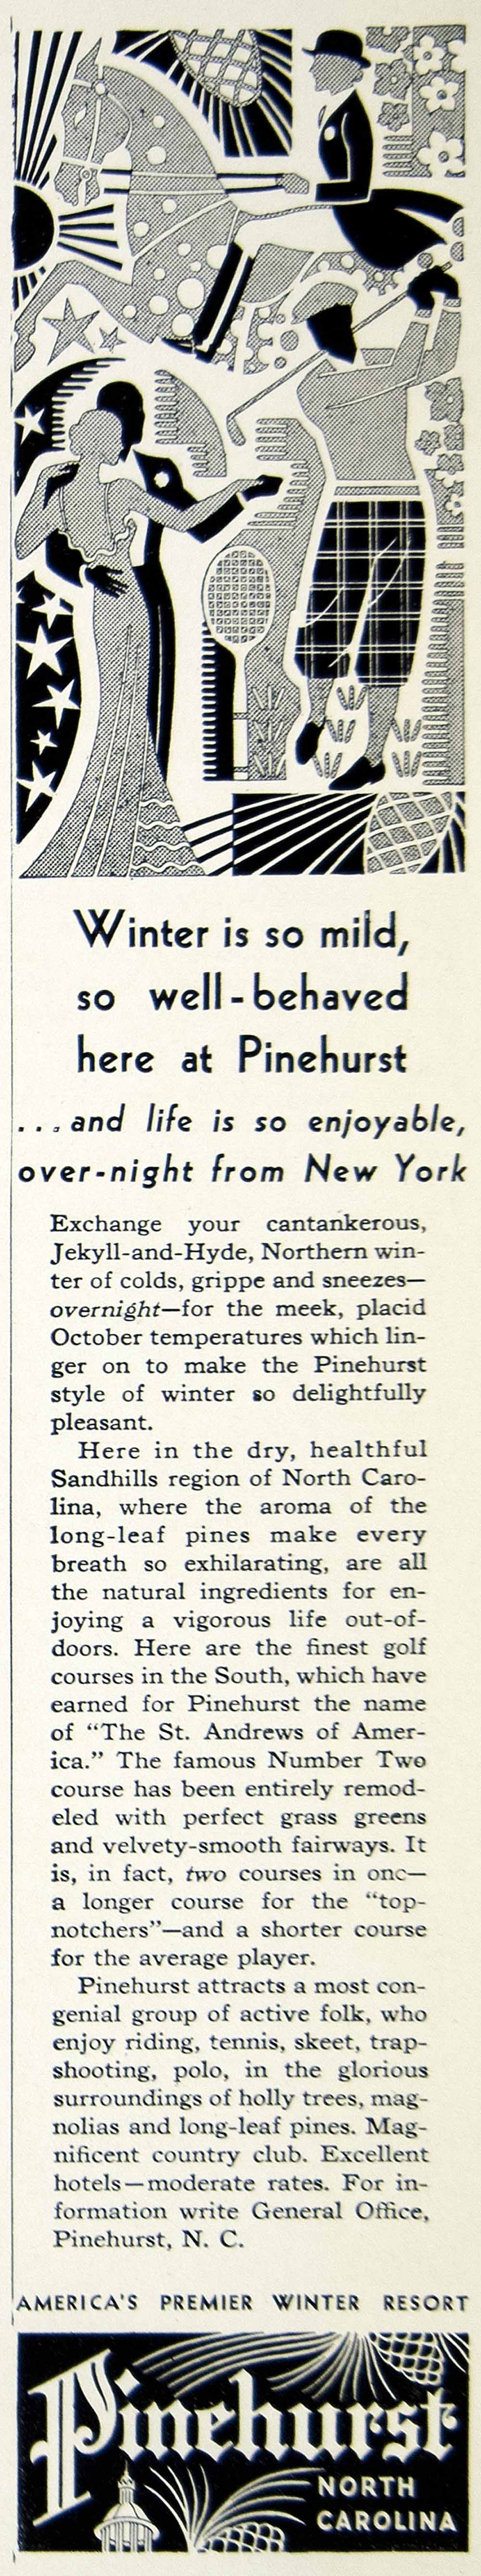 1936 Ad Pinehurst North Carolina Vacation Winter Resort Travel Holiday YTR1